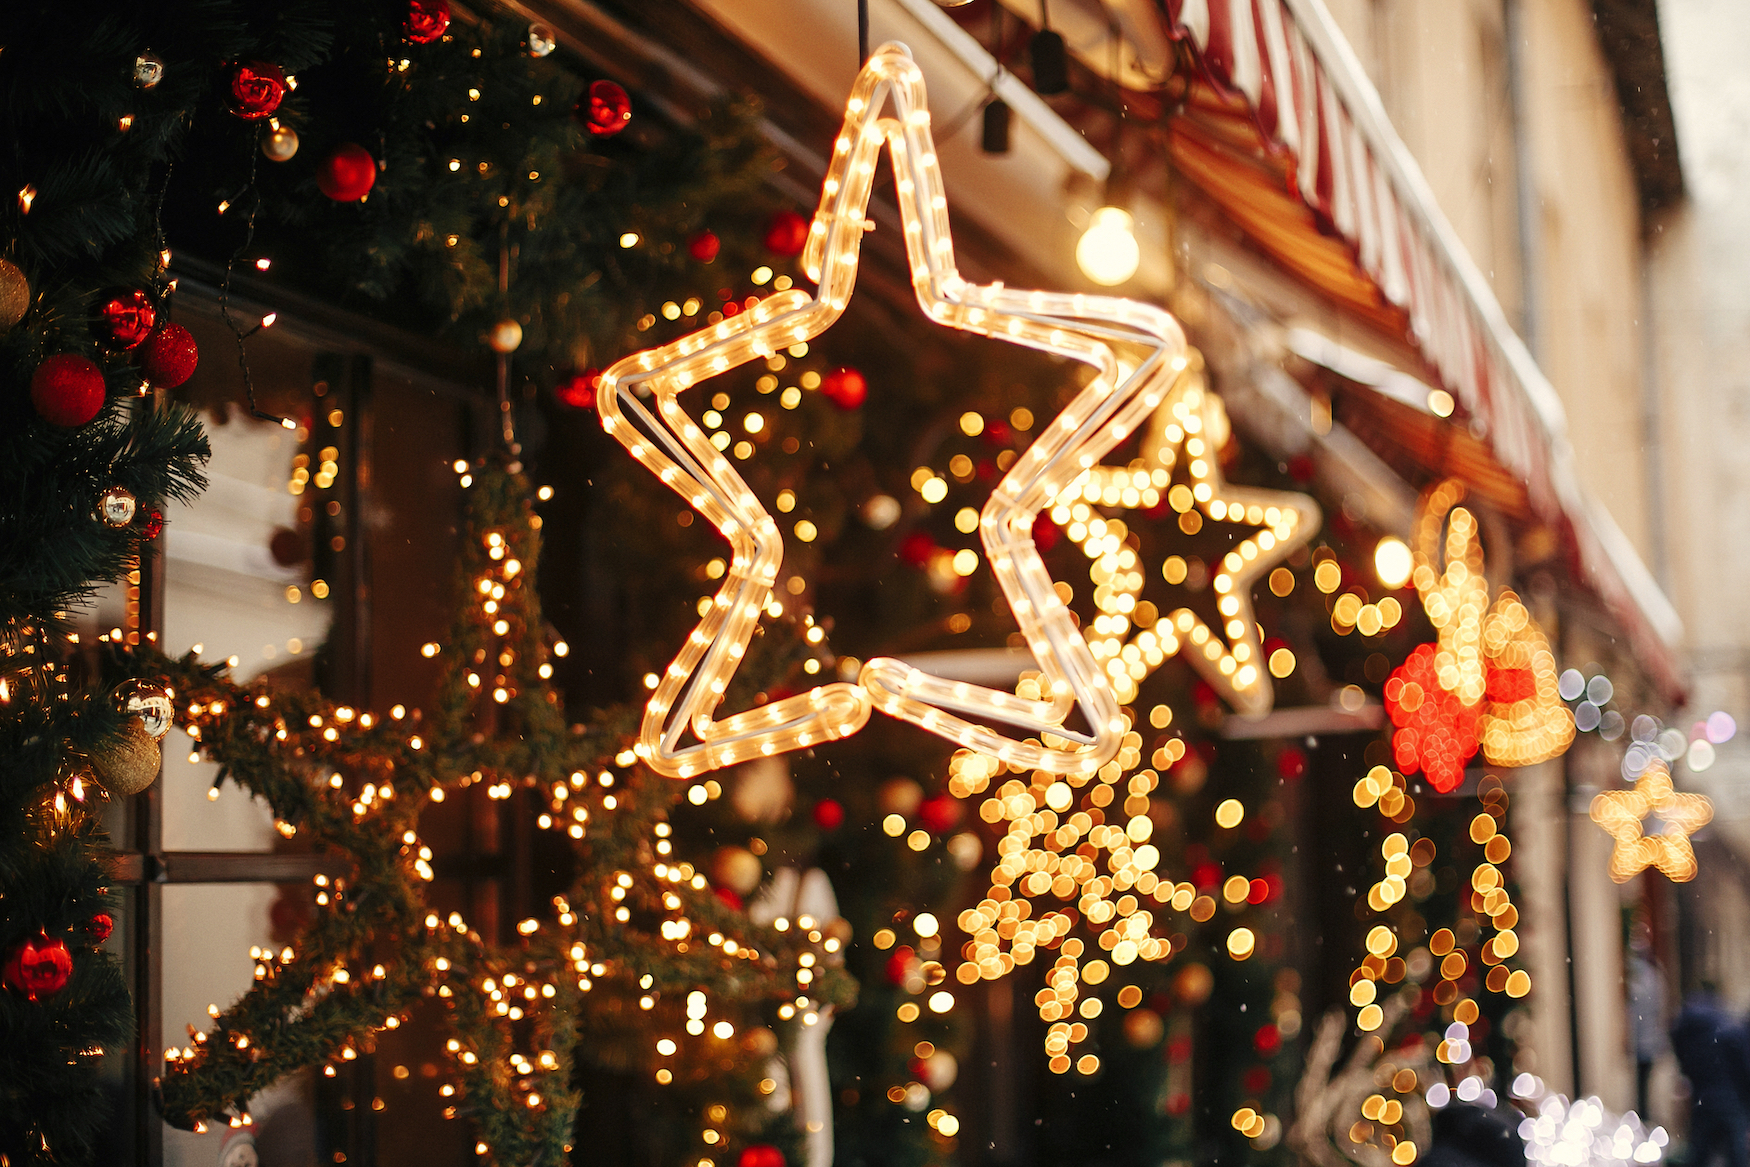 Sterne aus Lichterketten und mit Lichtern geschmücktes Tannengrün verzieren ein Haus festlich zur Weihnachtzeit.